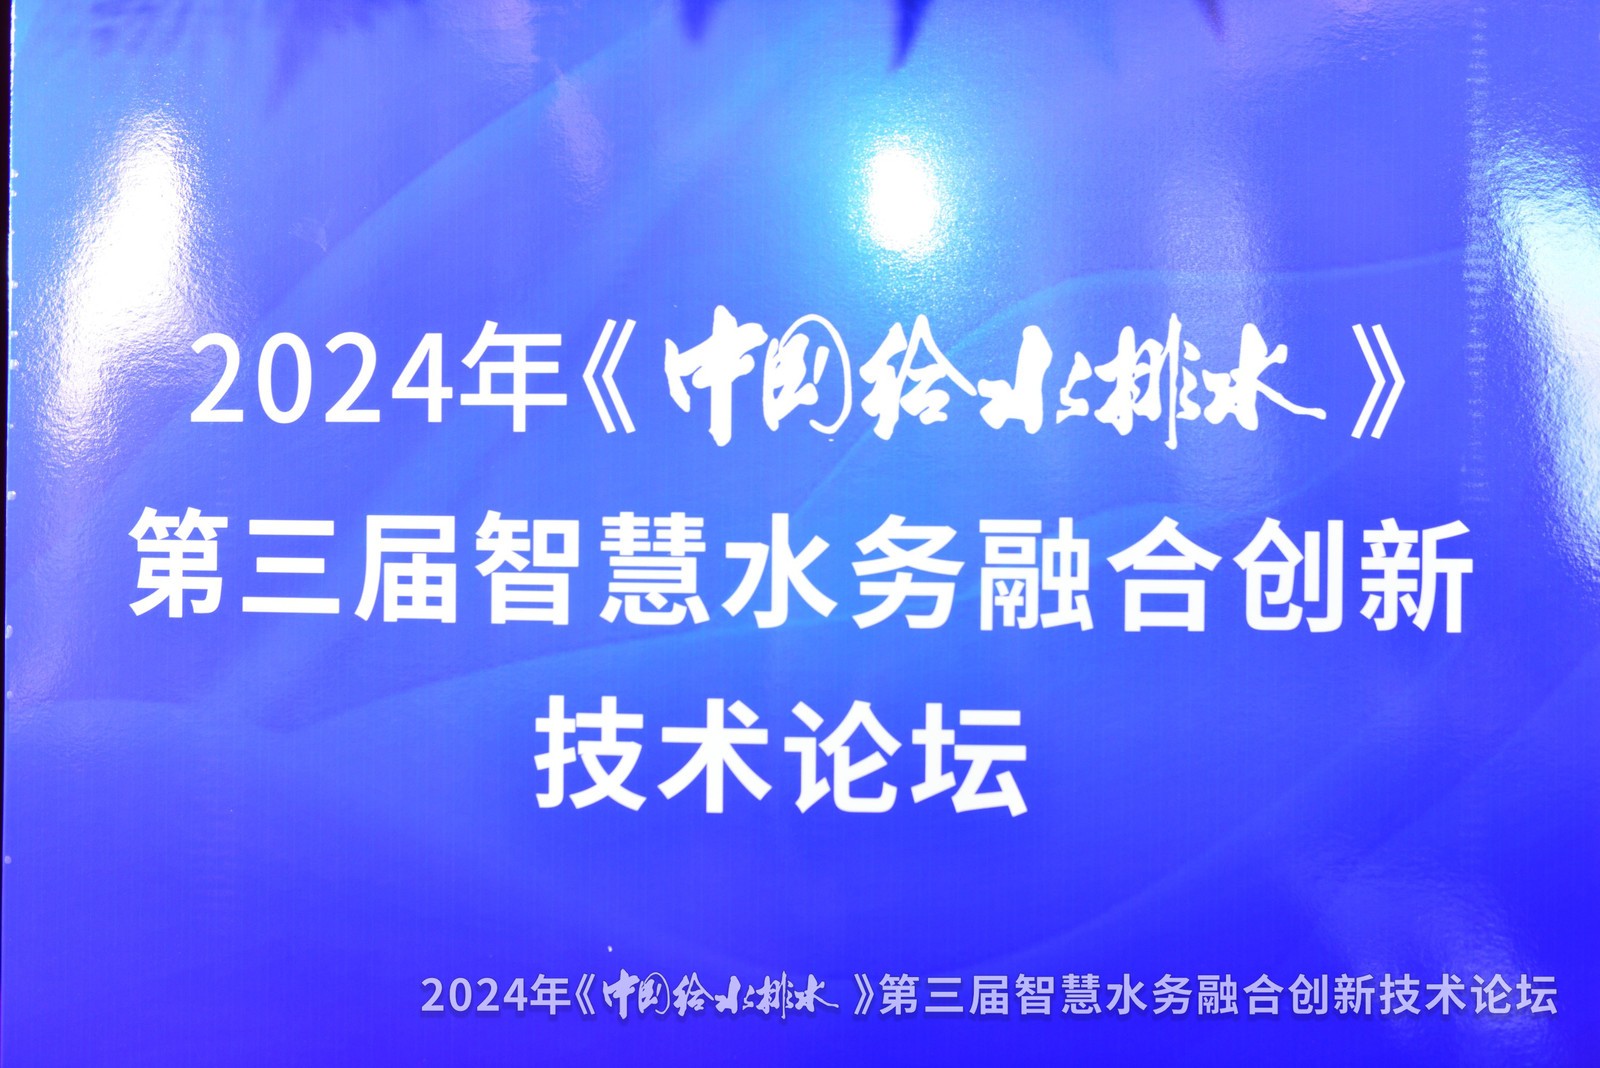 论坛会议丨武汉887700线路检测网受邀参加第三届智慧水务融合创新技术论坛